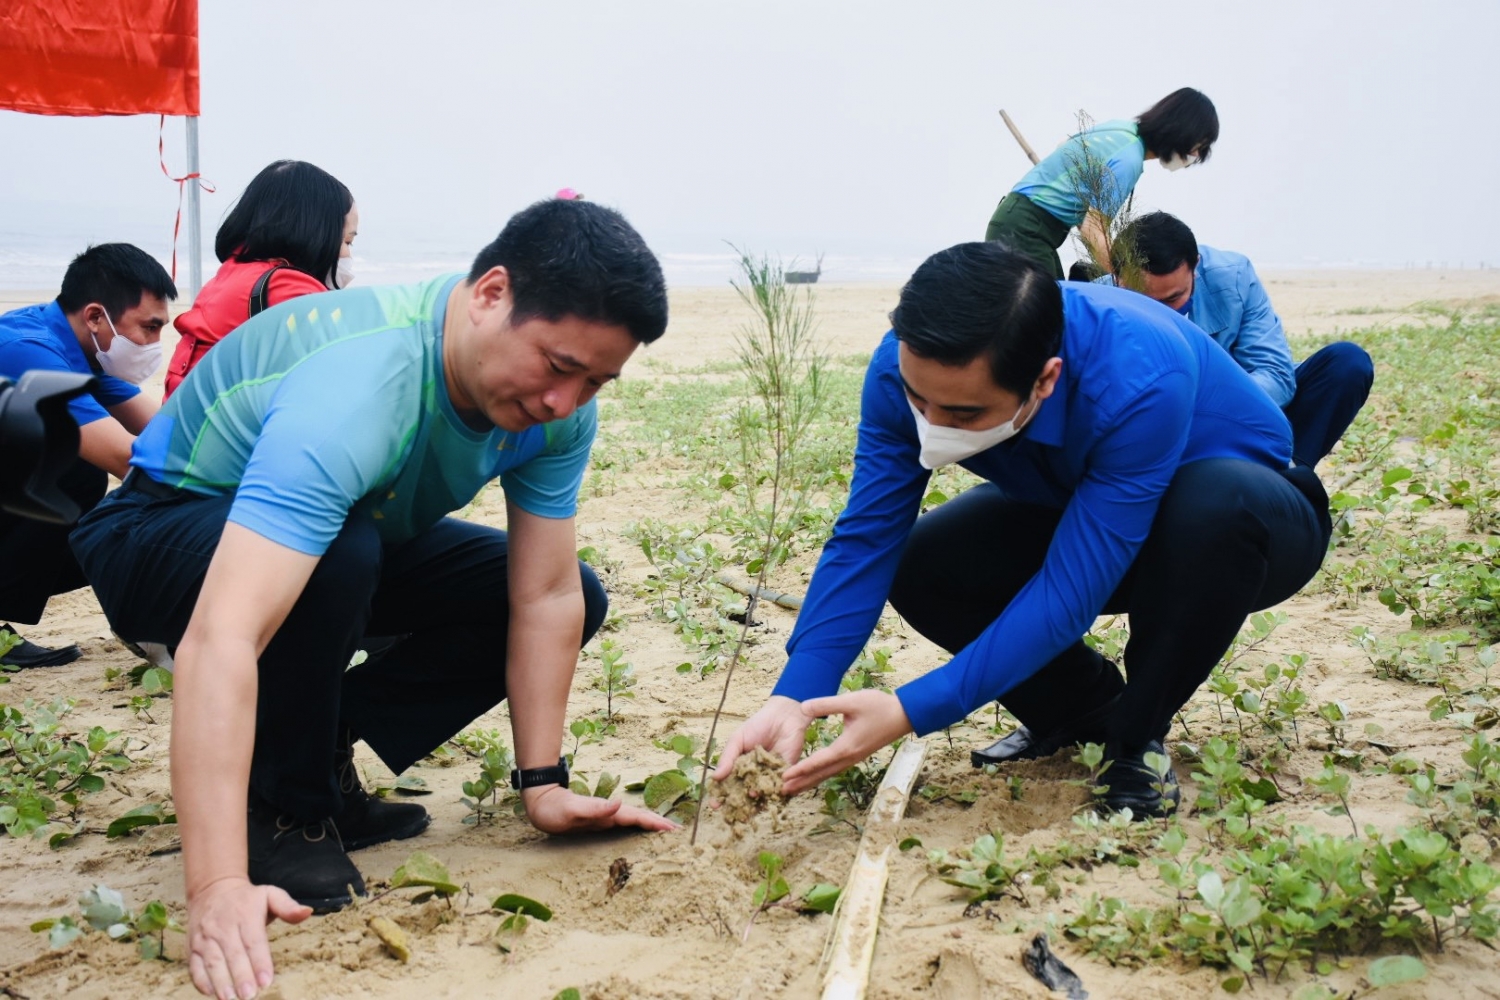 BIDV khánh thành nhà cộng đồng tránh lũ và trồng cây phòng hộ ven biển tại Hà Tĩnh